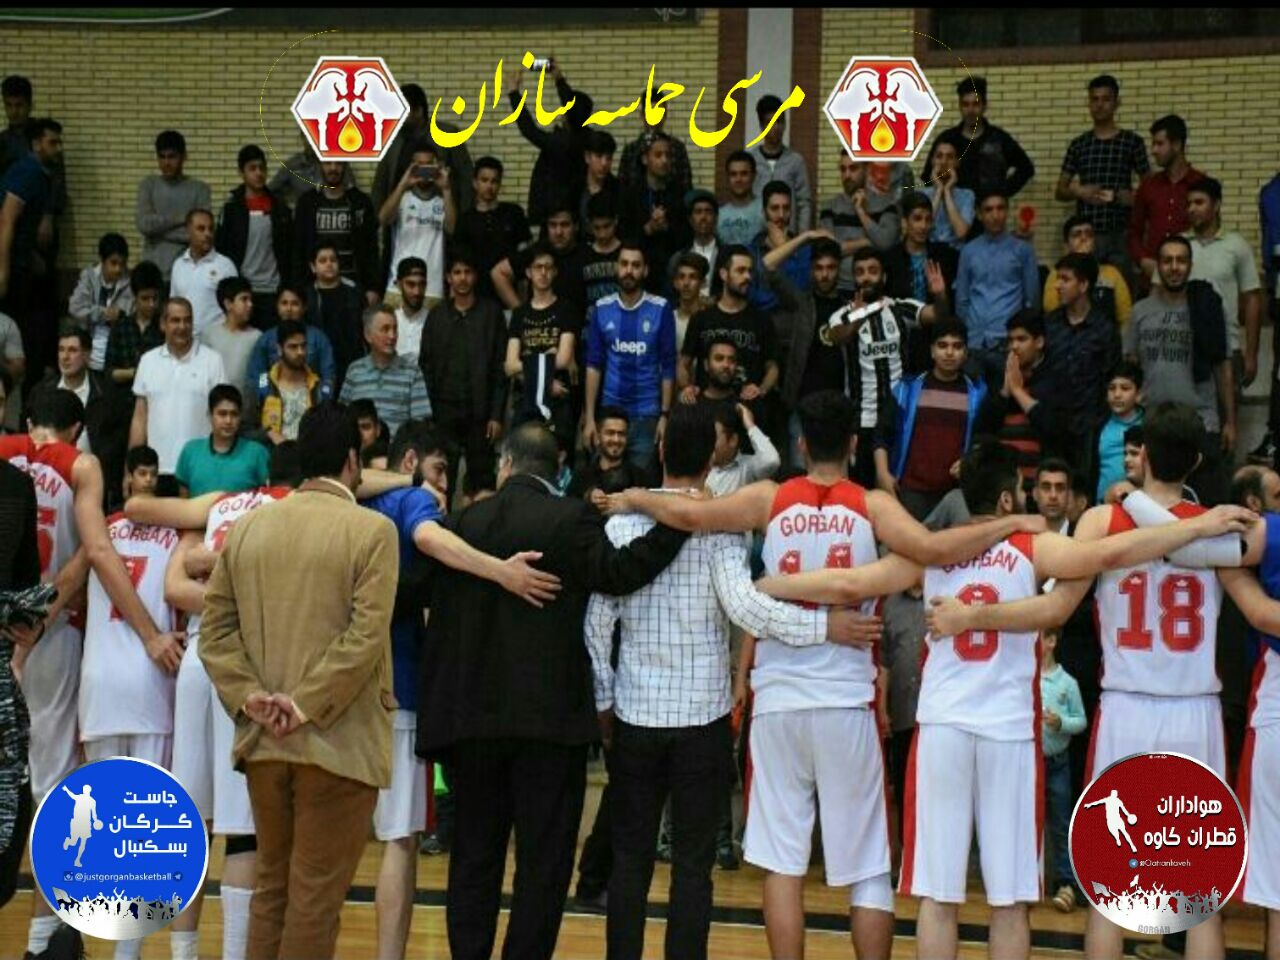 صحبت های سرمربیان تیم های قطران کاوه گرگان و مهرام تهران پس از دیدار رفت فینال لیگ دسته یک بسکتبال کشور